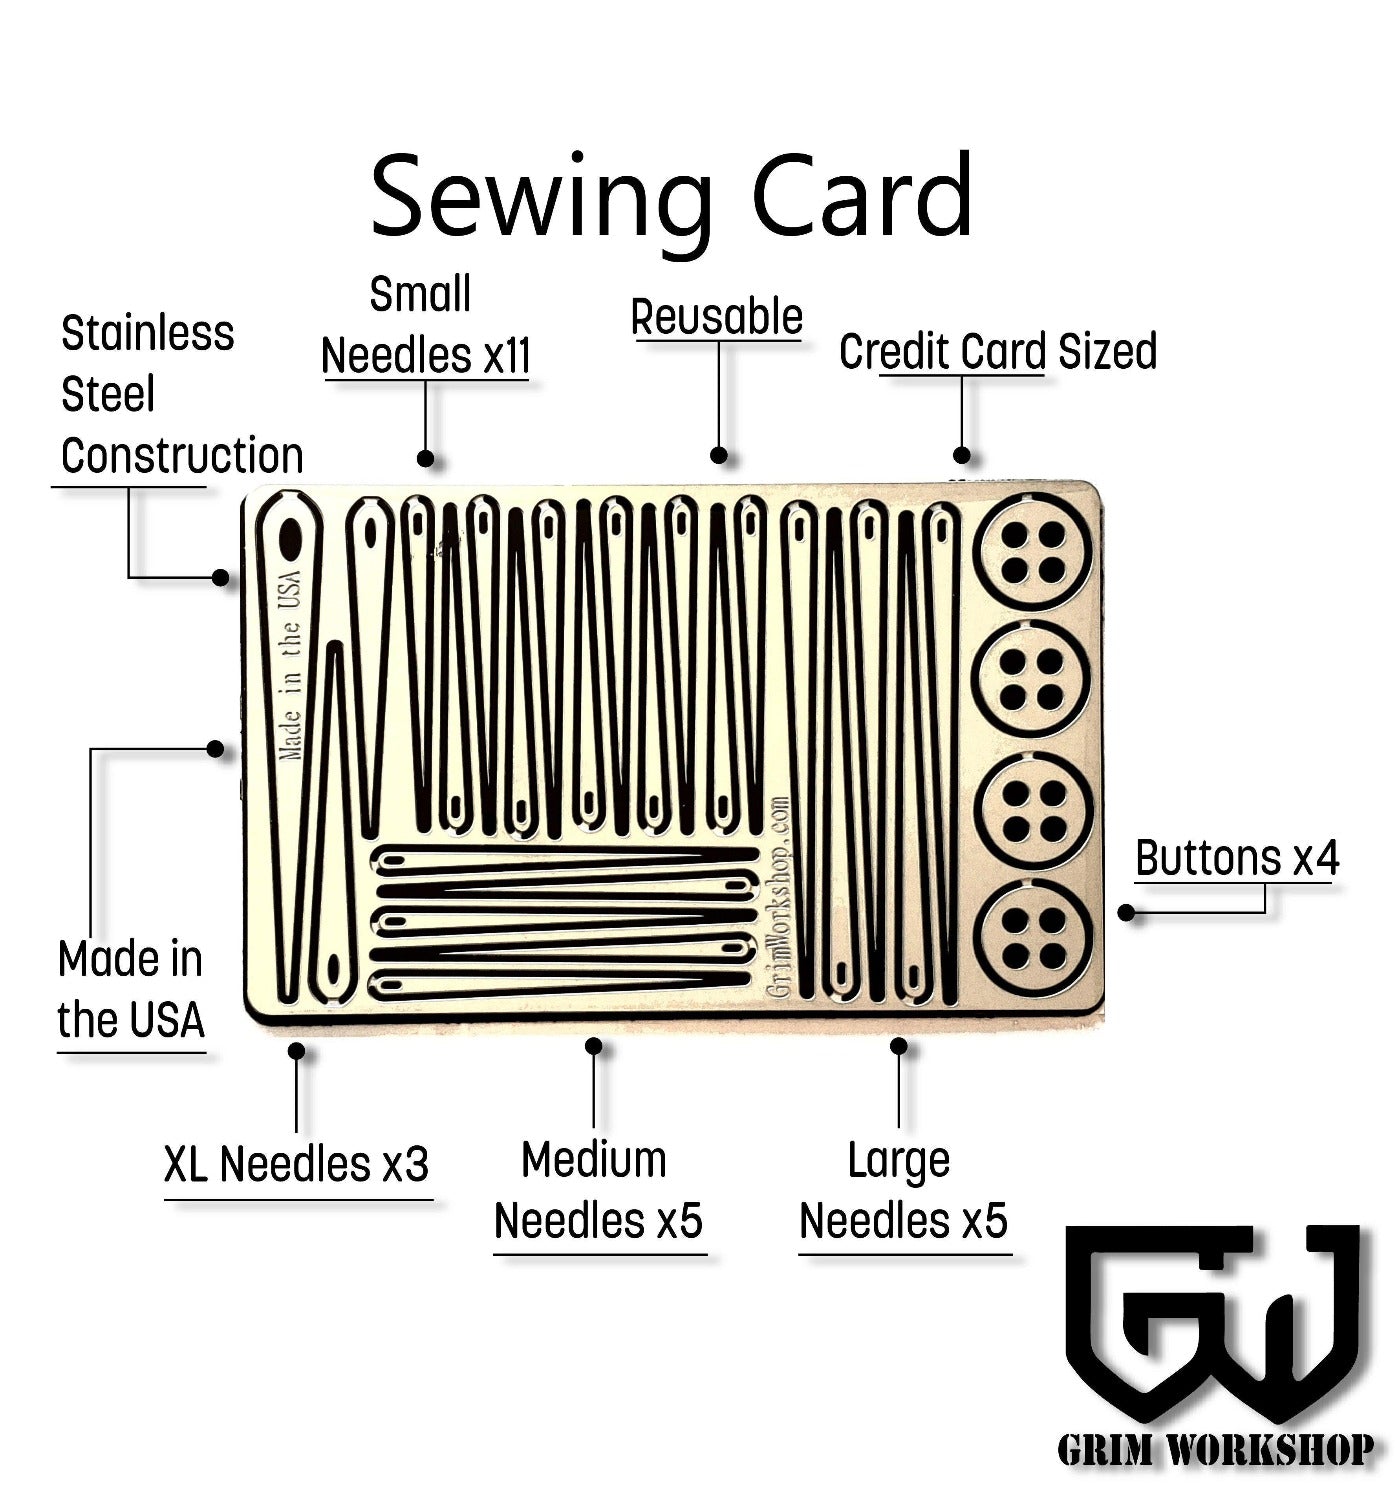 Grim Workshop Sewing Kit Card